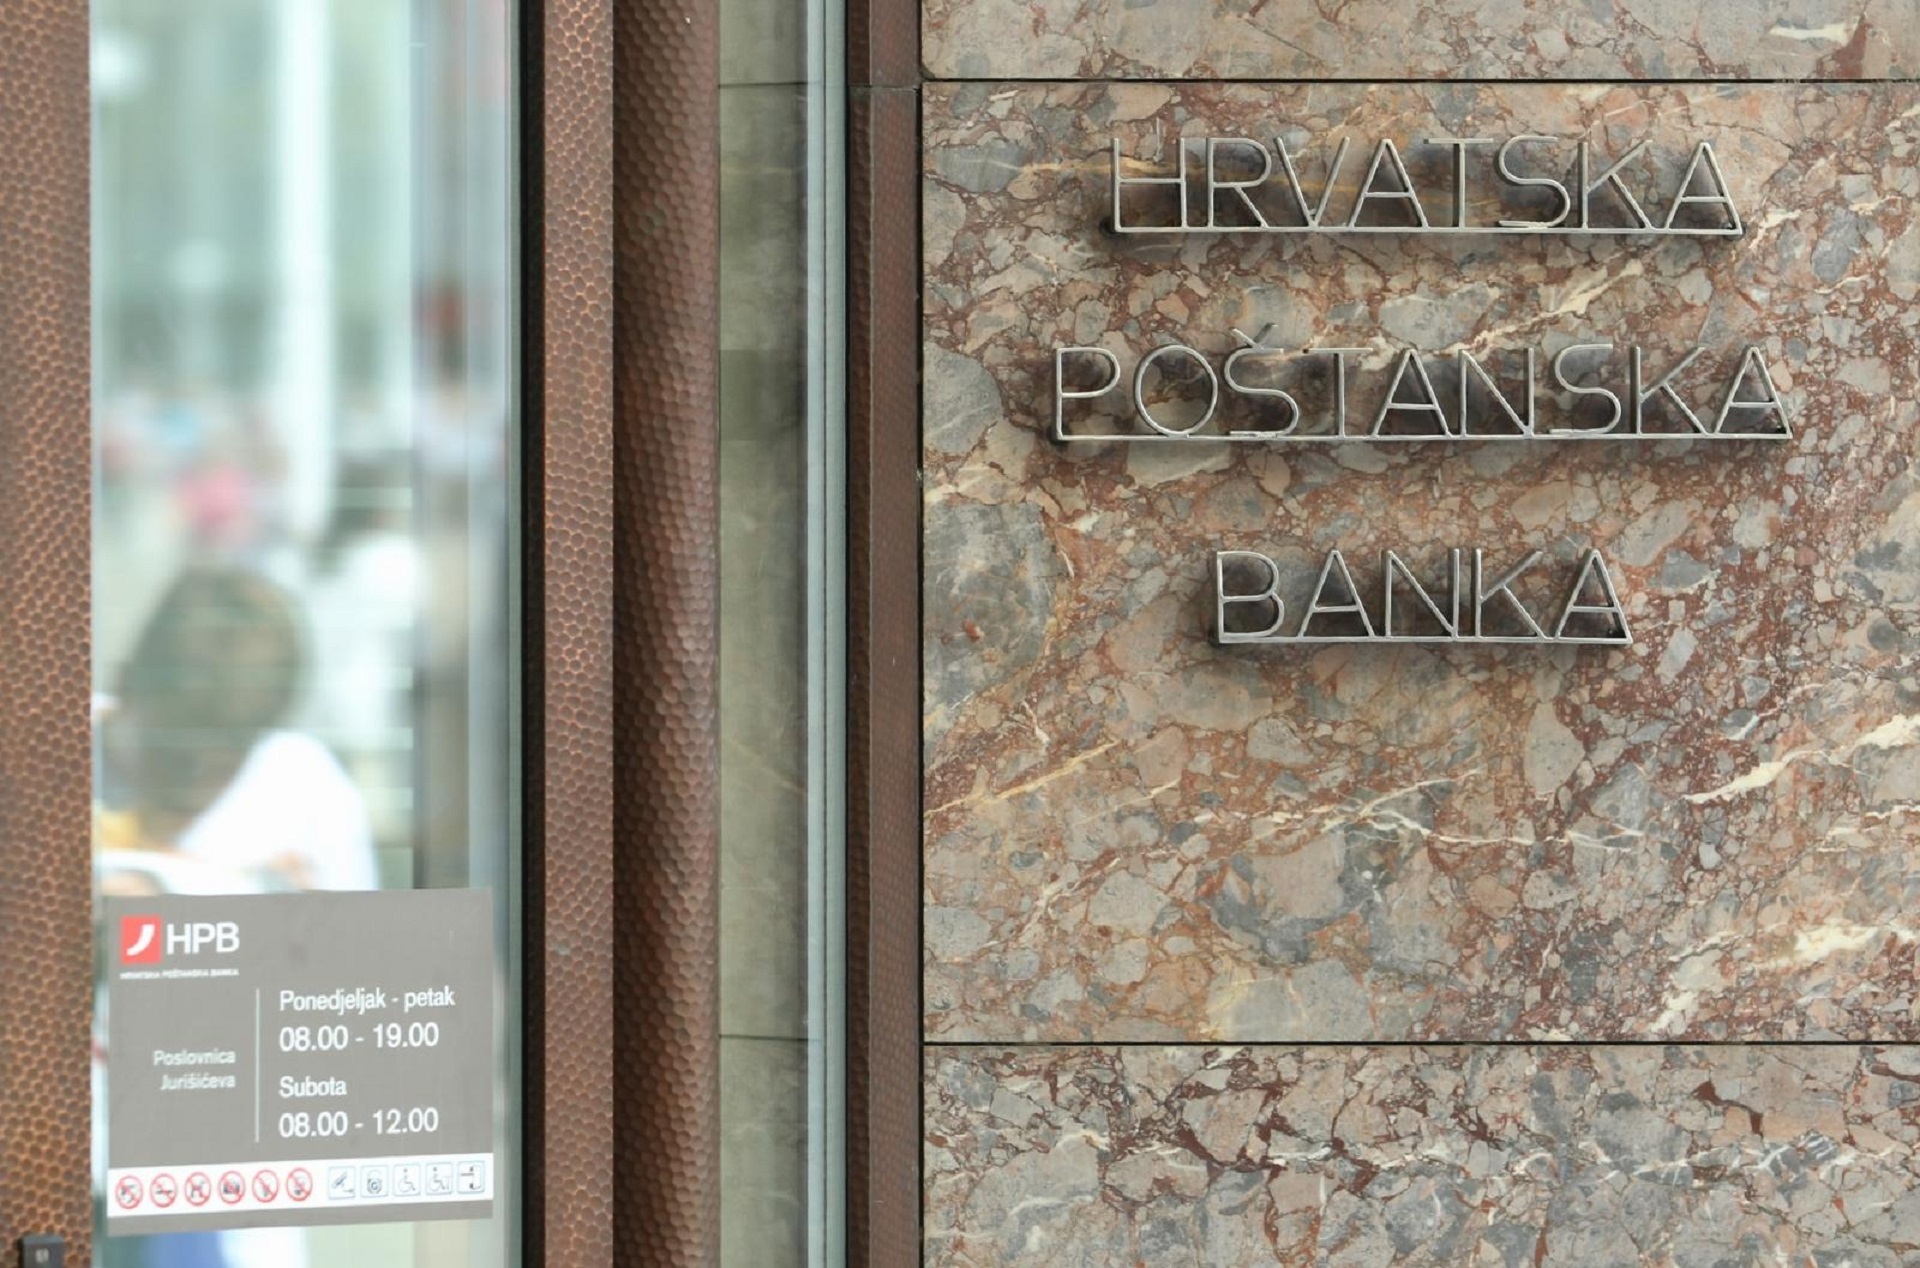 16.09.2013., Zagreb -  Poslovnica Hrvatske postanske banke u Jurisicevoj ulici. Photo: Zeljko Lukunic/PIXSELL